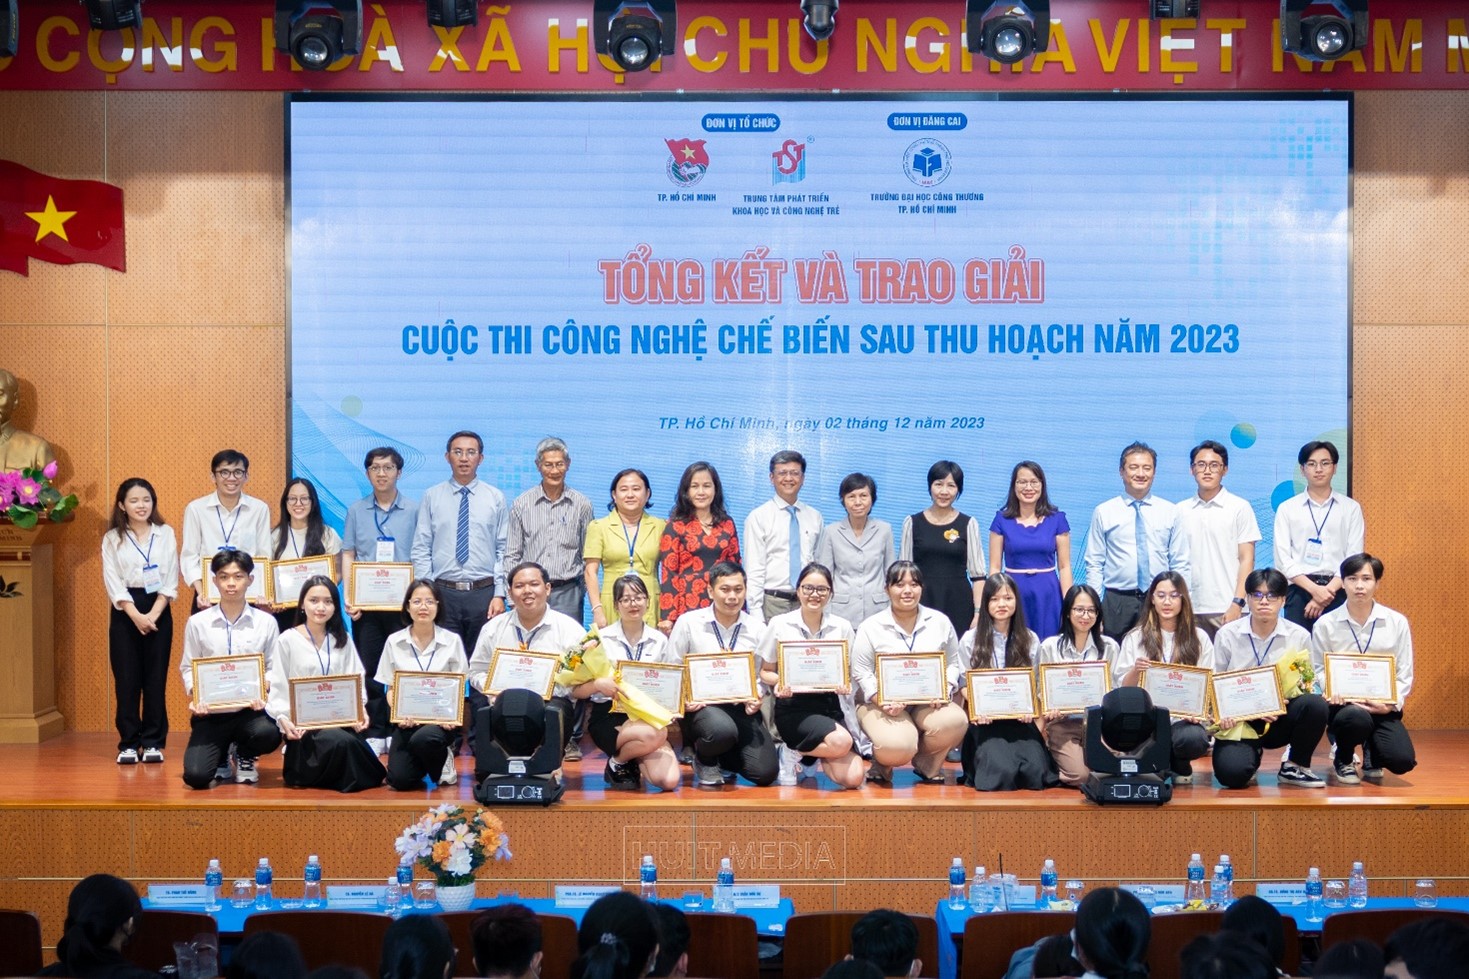 Trường Đại học Công Thương Thành phố Hồ Chí Minh tiếp tục đăng cai tổ chức thành công Cuộc thi Công nghệ chế biến sau thu hoạch năm 2023